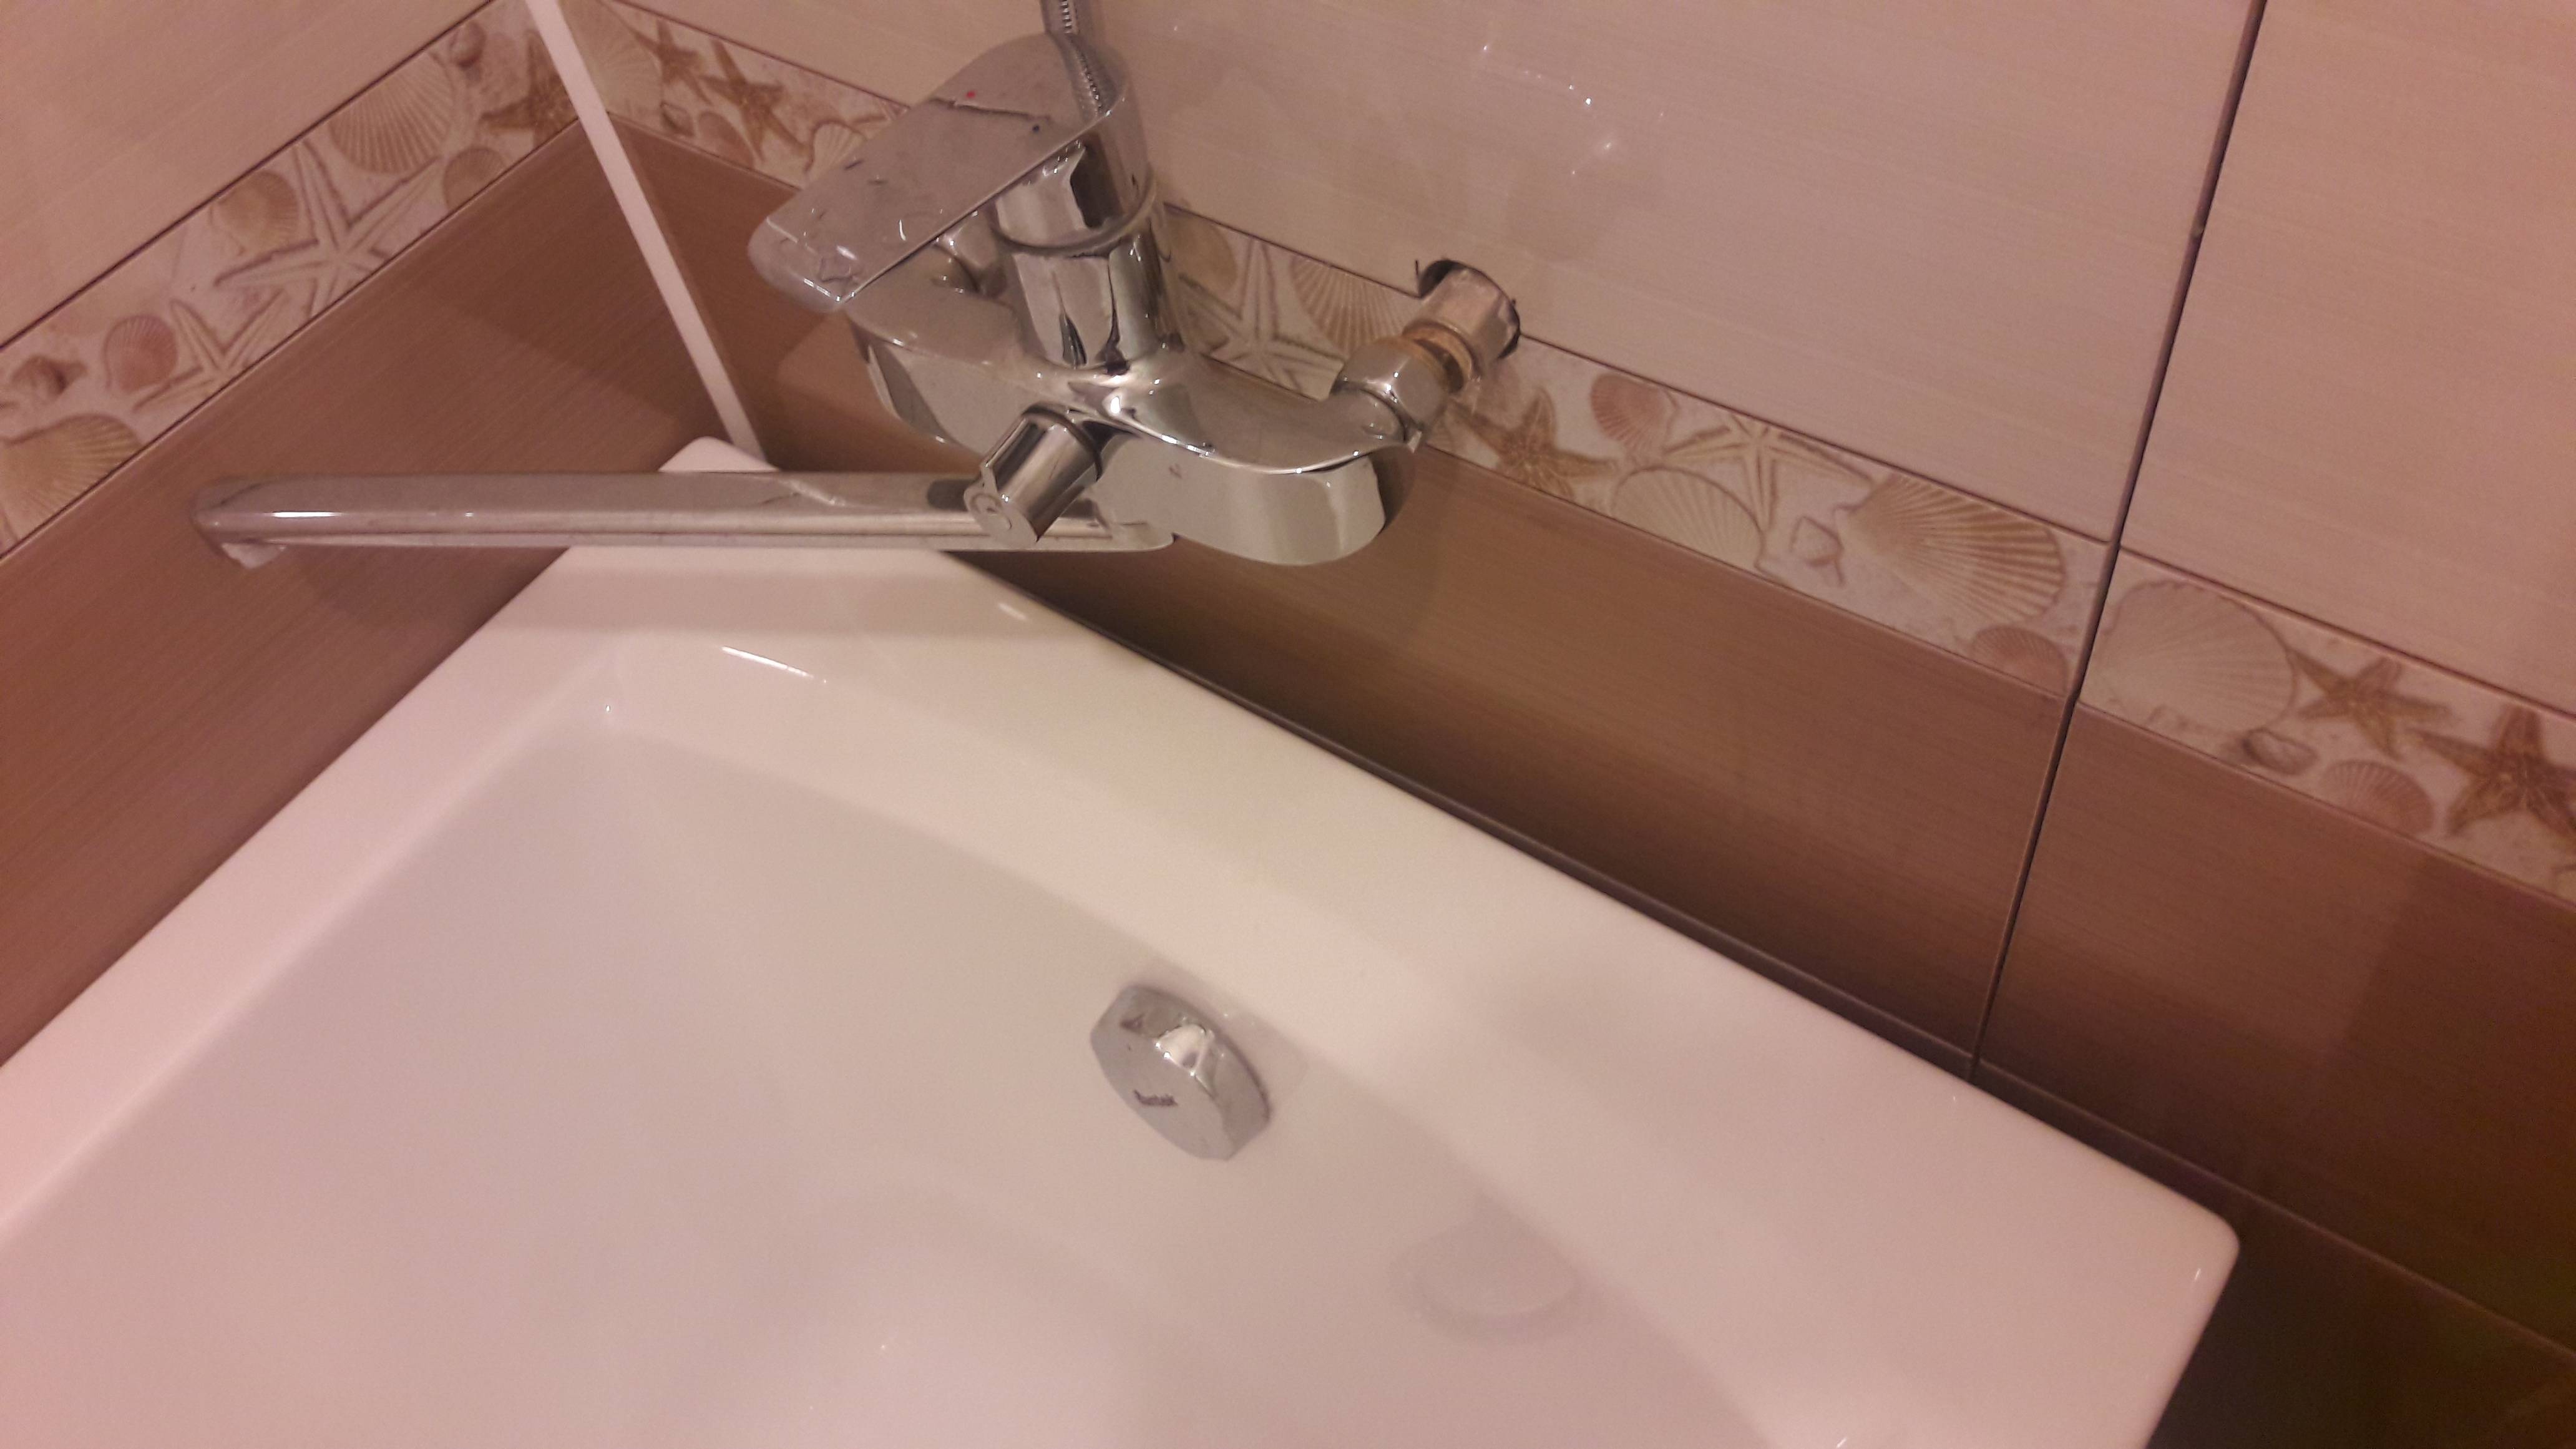 Чем можно заделать щель между ванной и стеной — материалы и пошаговые инструкции по каждому способу